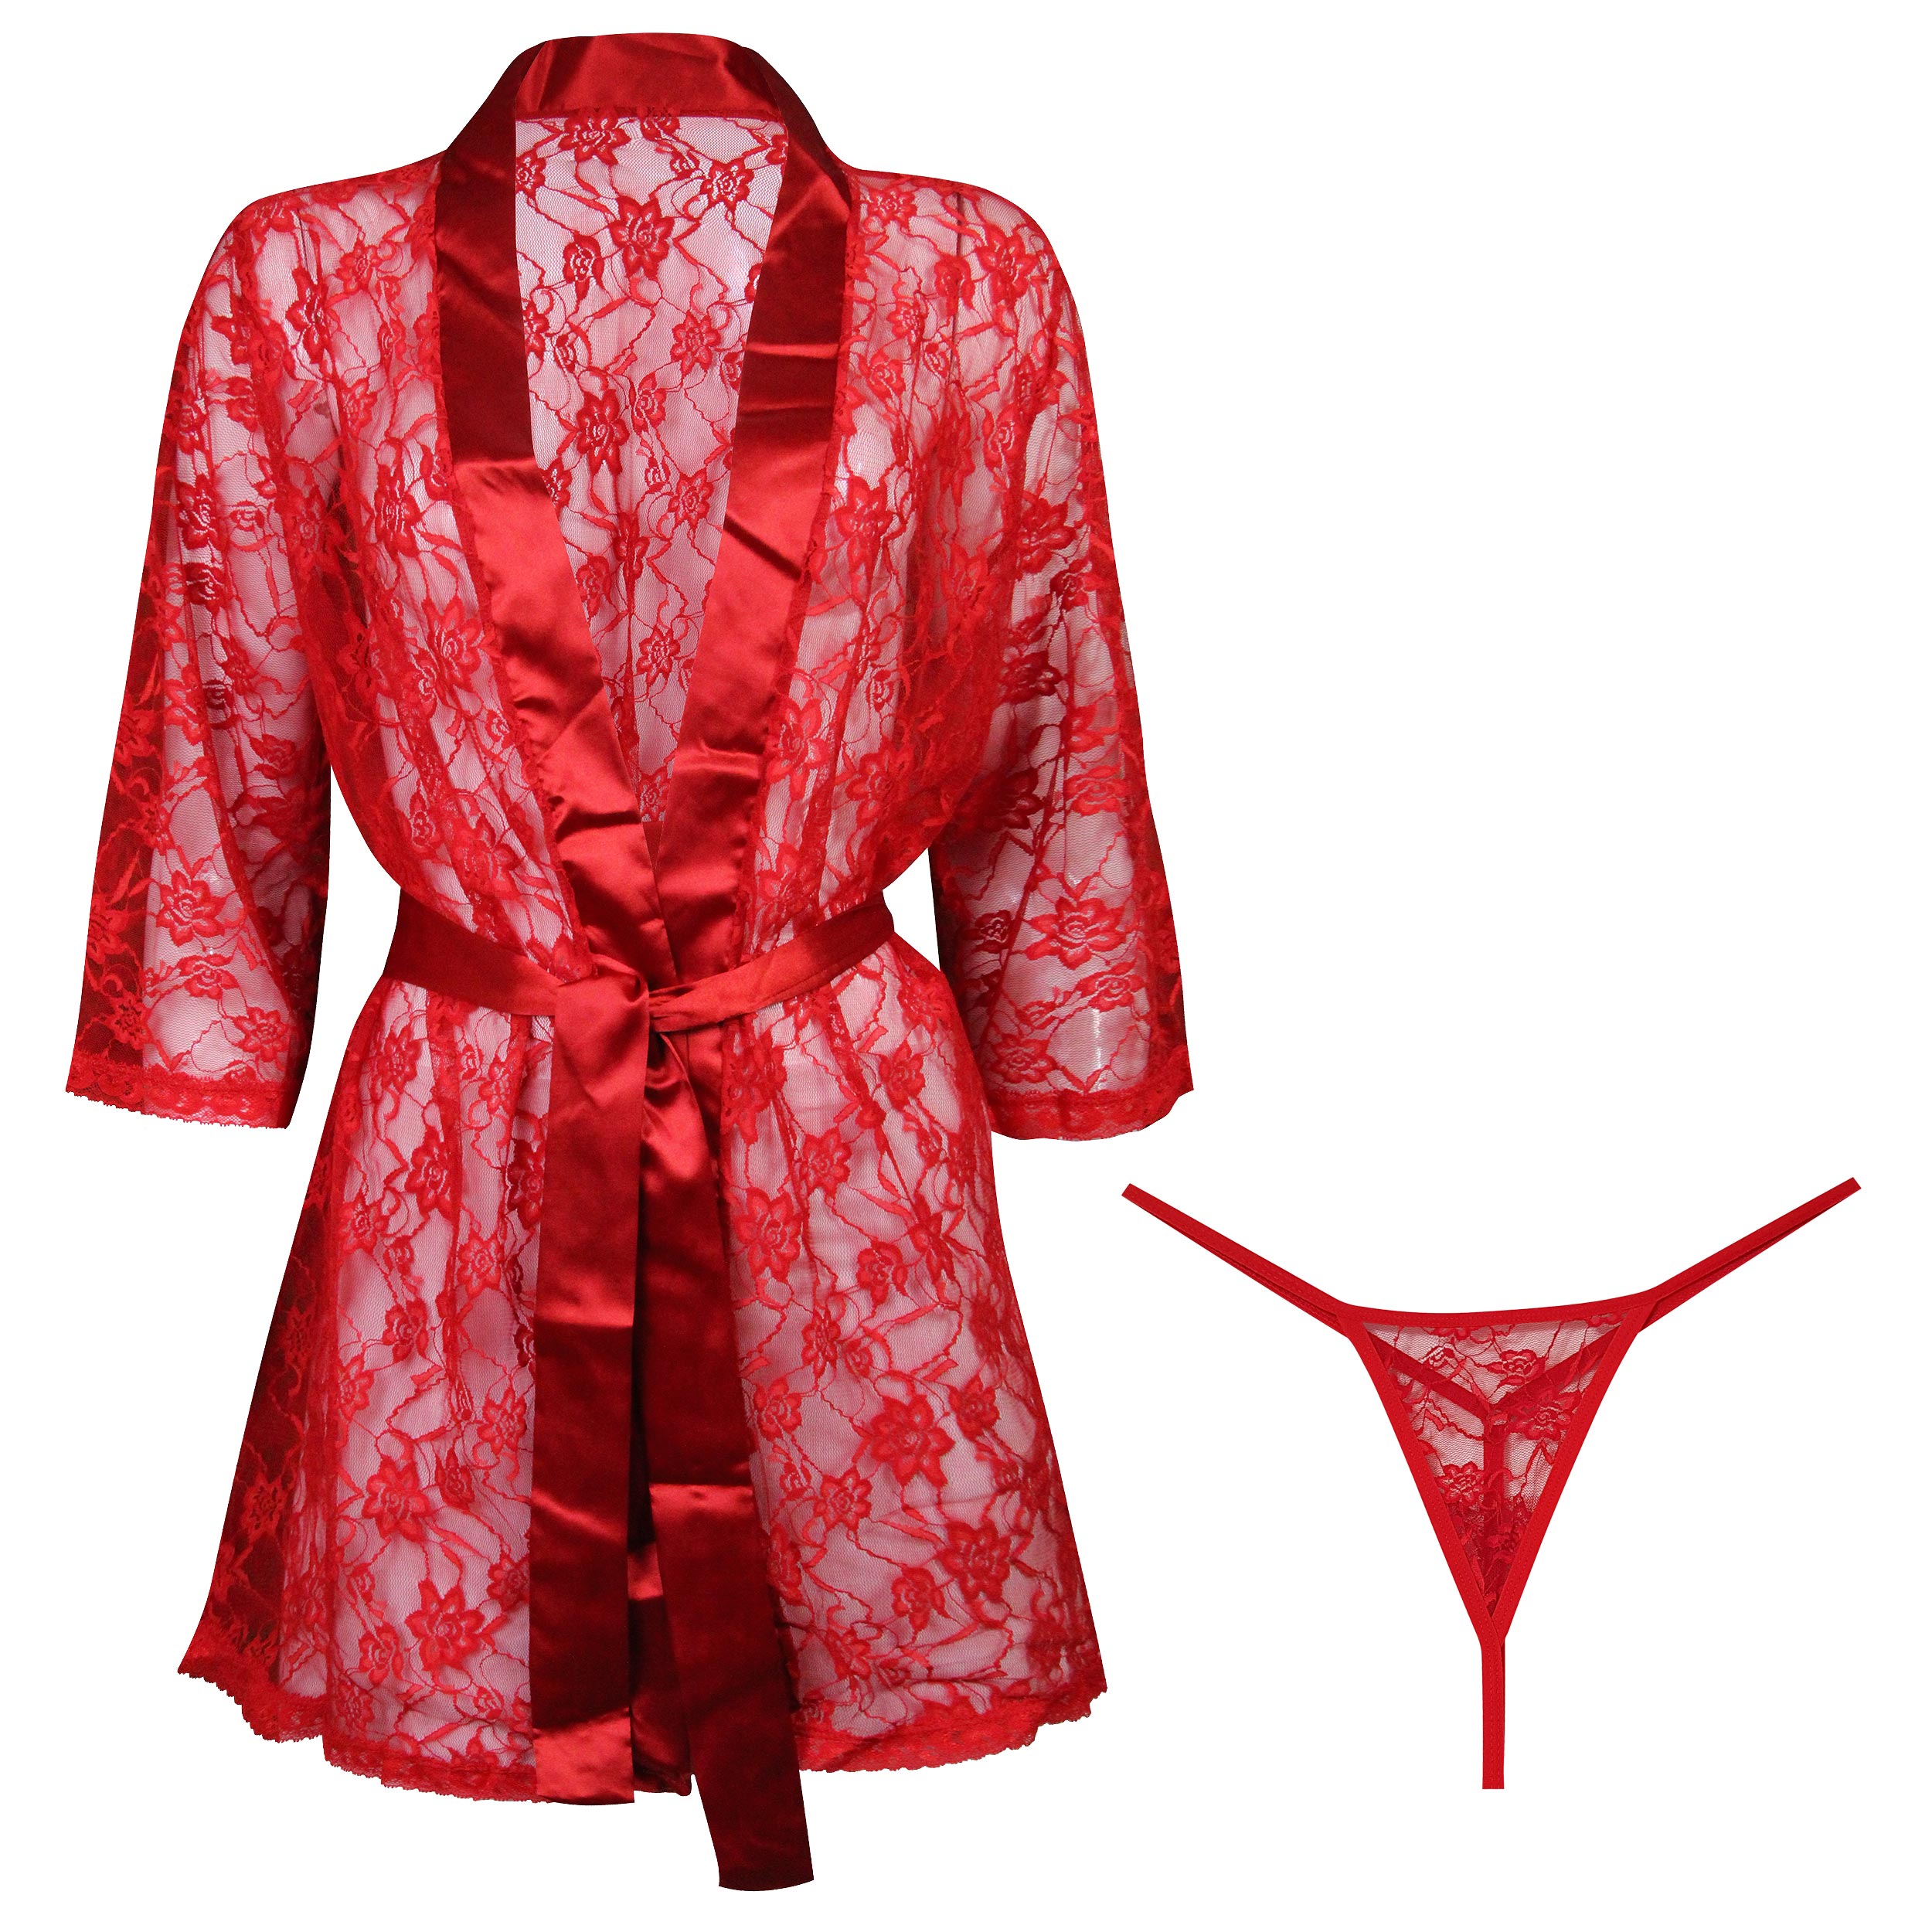 لباس خواب زنانه ماییلدا مدل گیپور کد 3685-806 رنگ قرمز